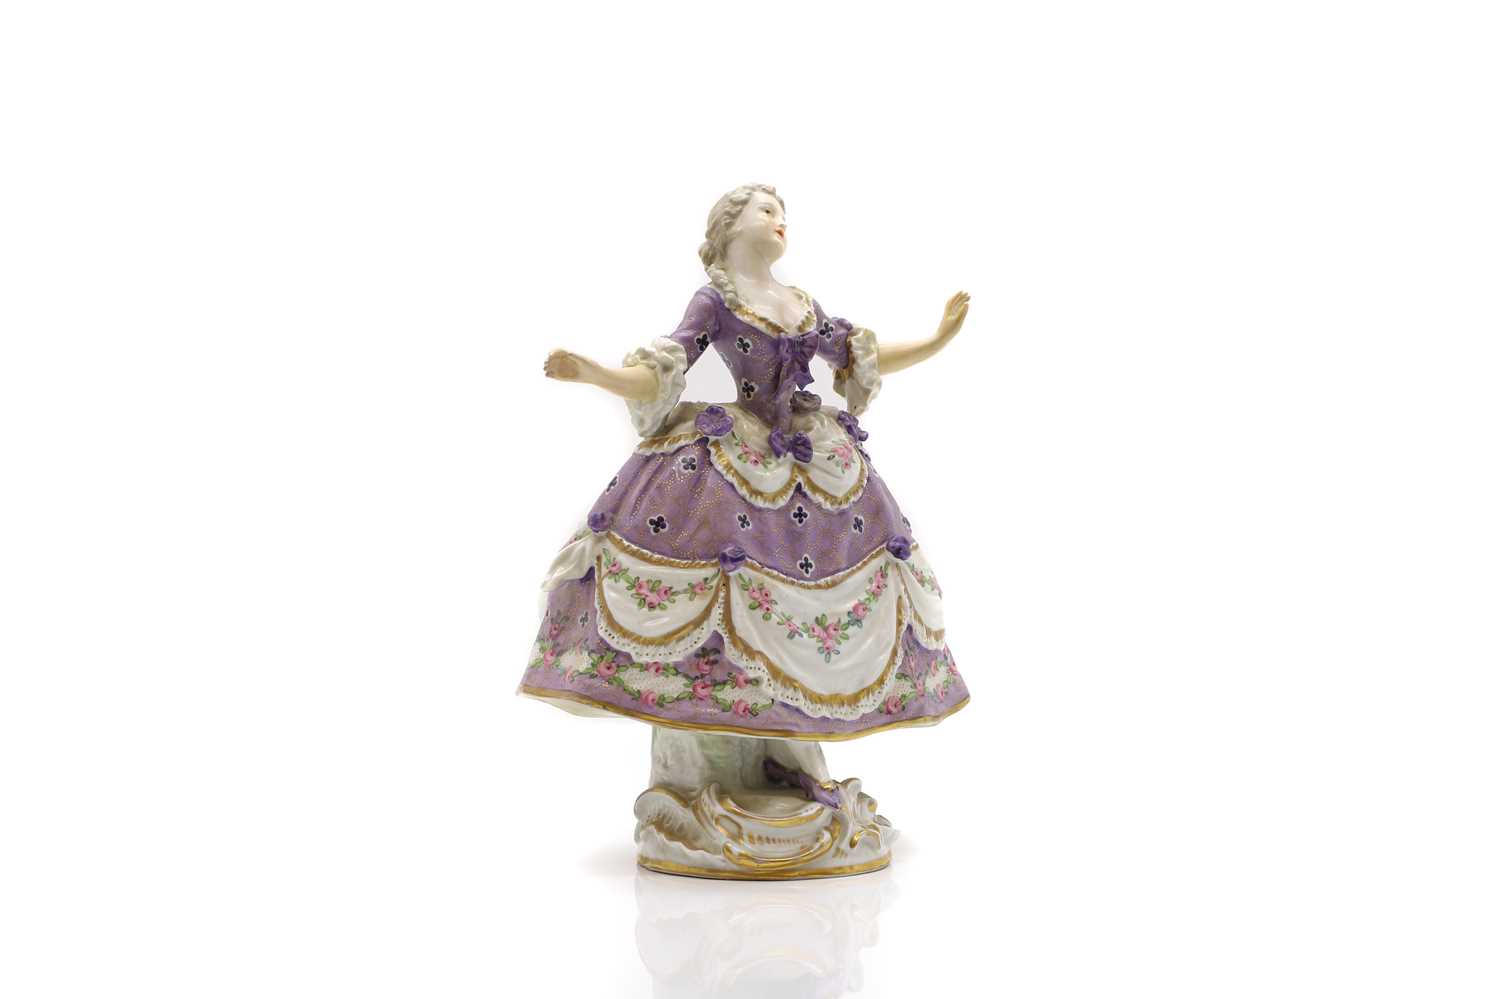 A Sevres style porcelain figure